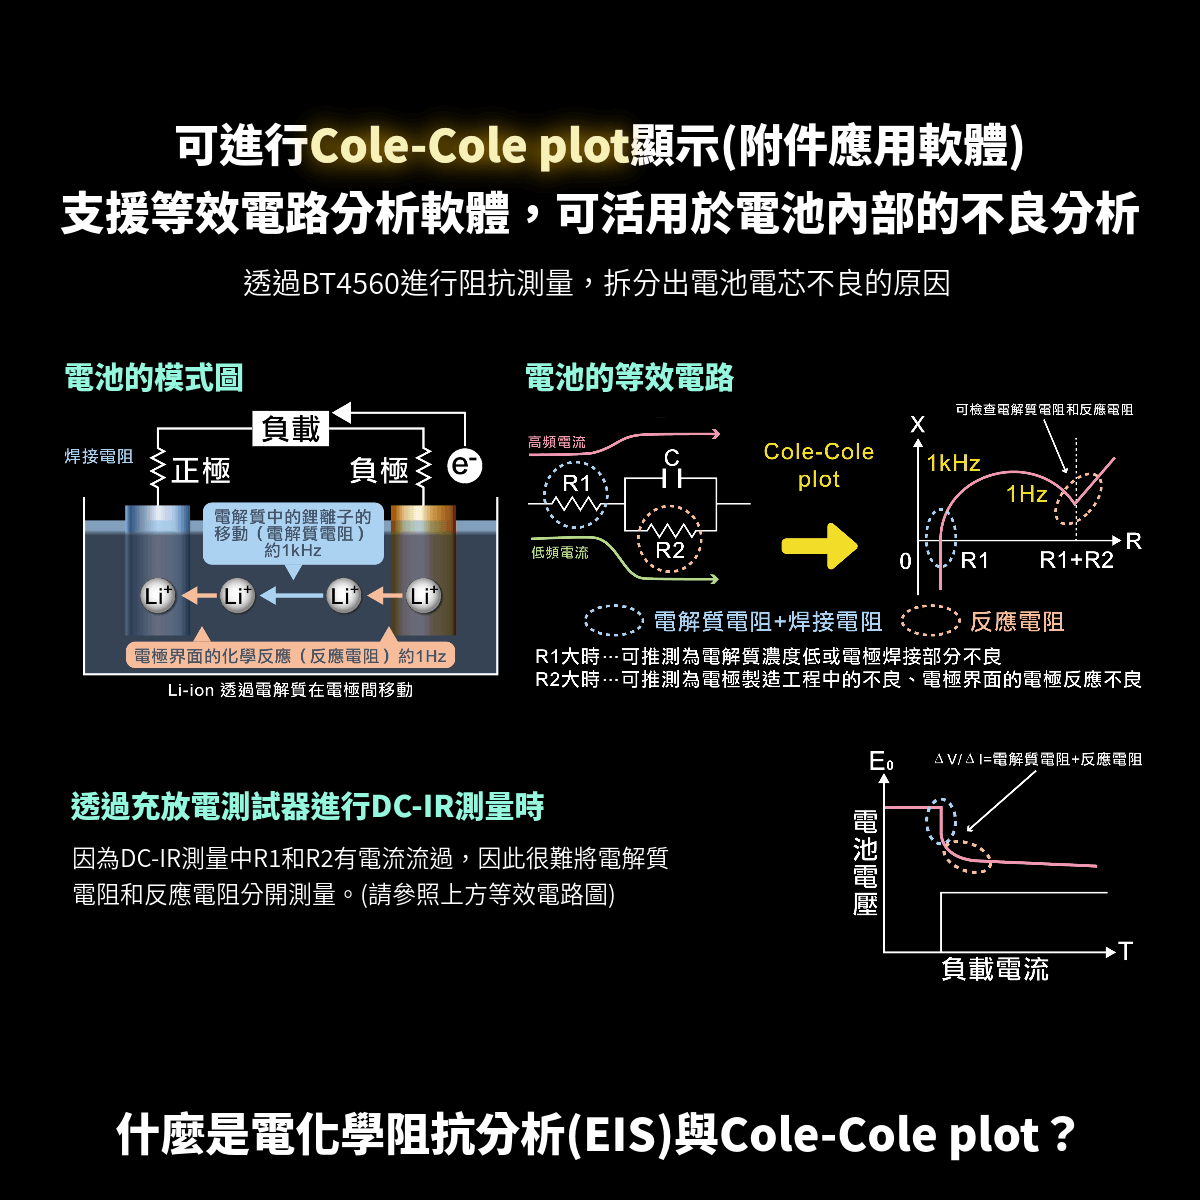 可進行Cole-Cole plot顯示，支援等效電路分析軟體